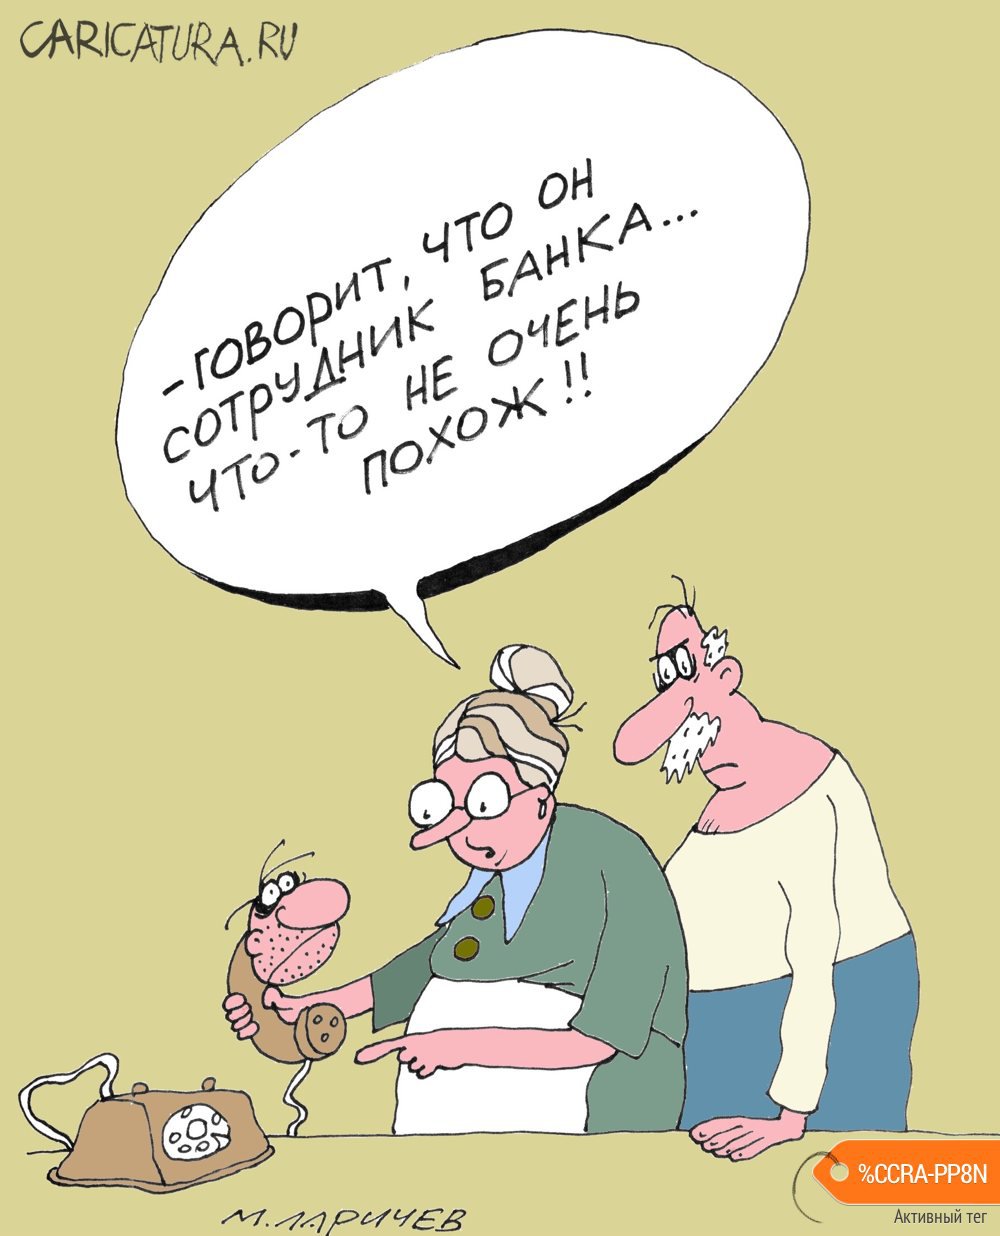 Карикатура "Сотрудник", Михаил Ларичев